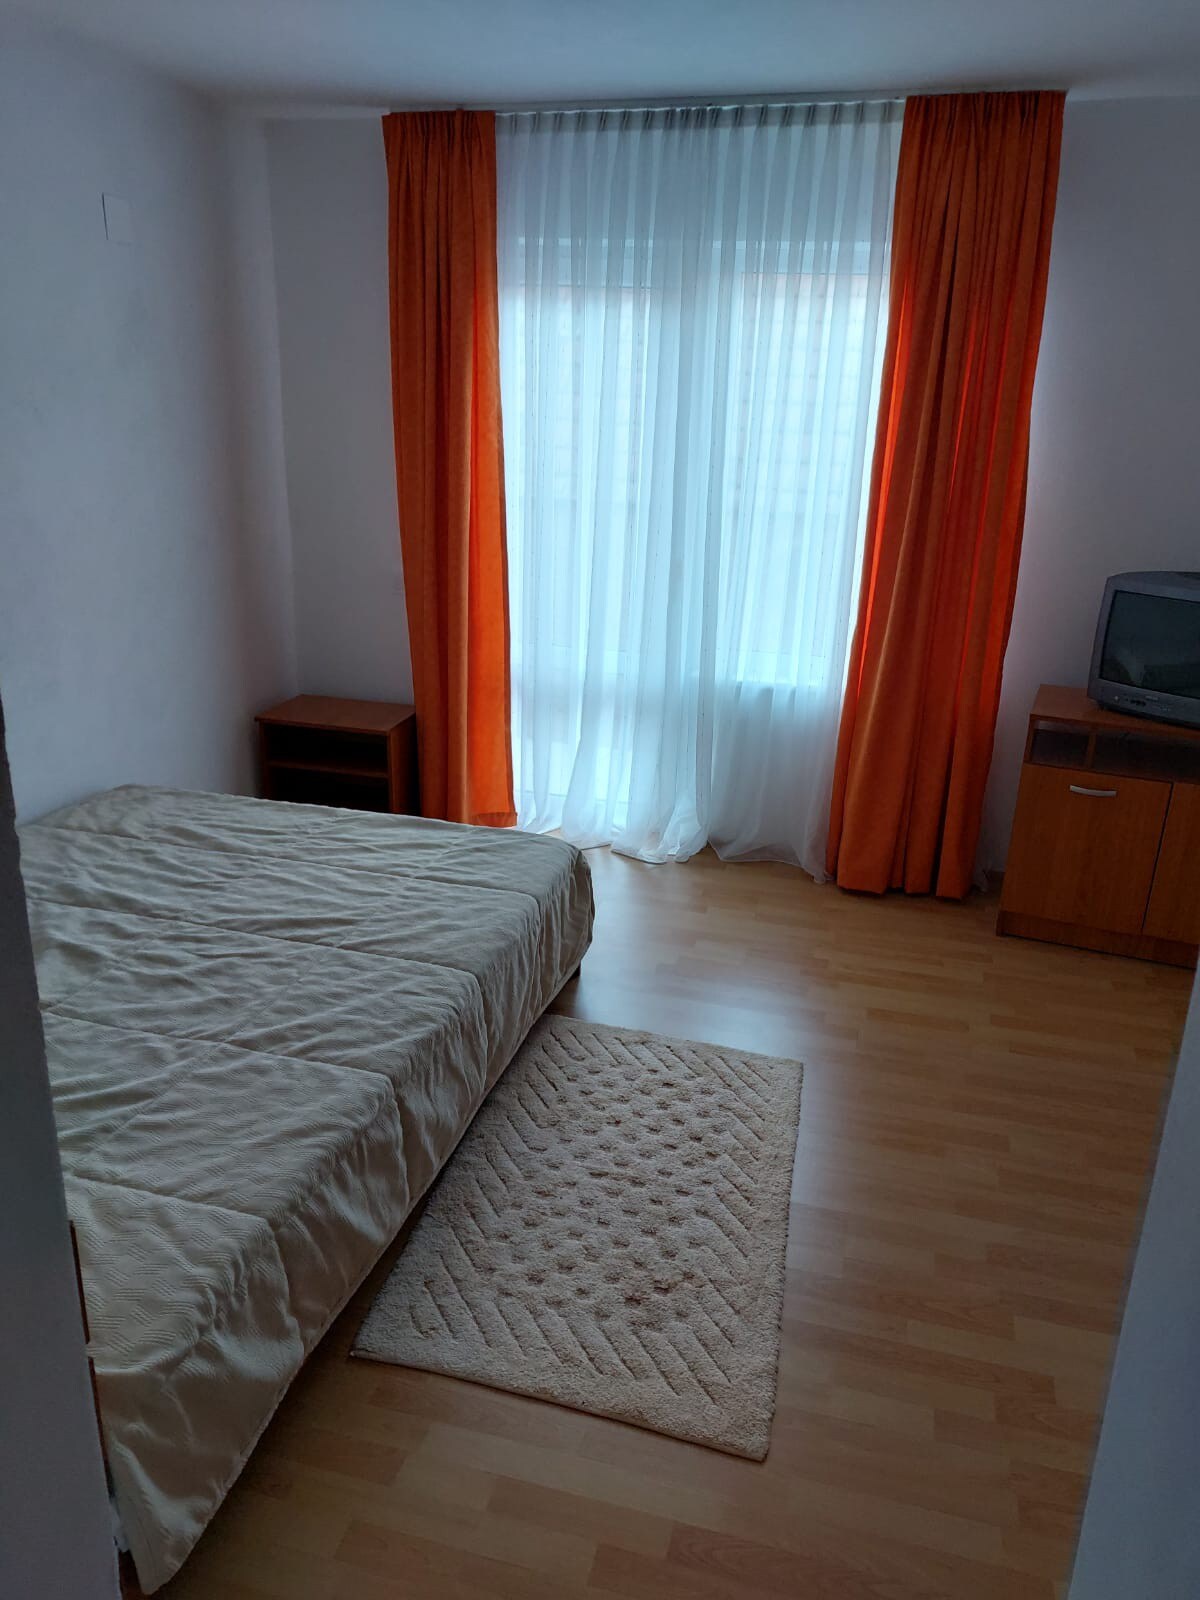 Dormitoare disponibile în Zărnești Brașov